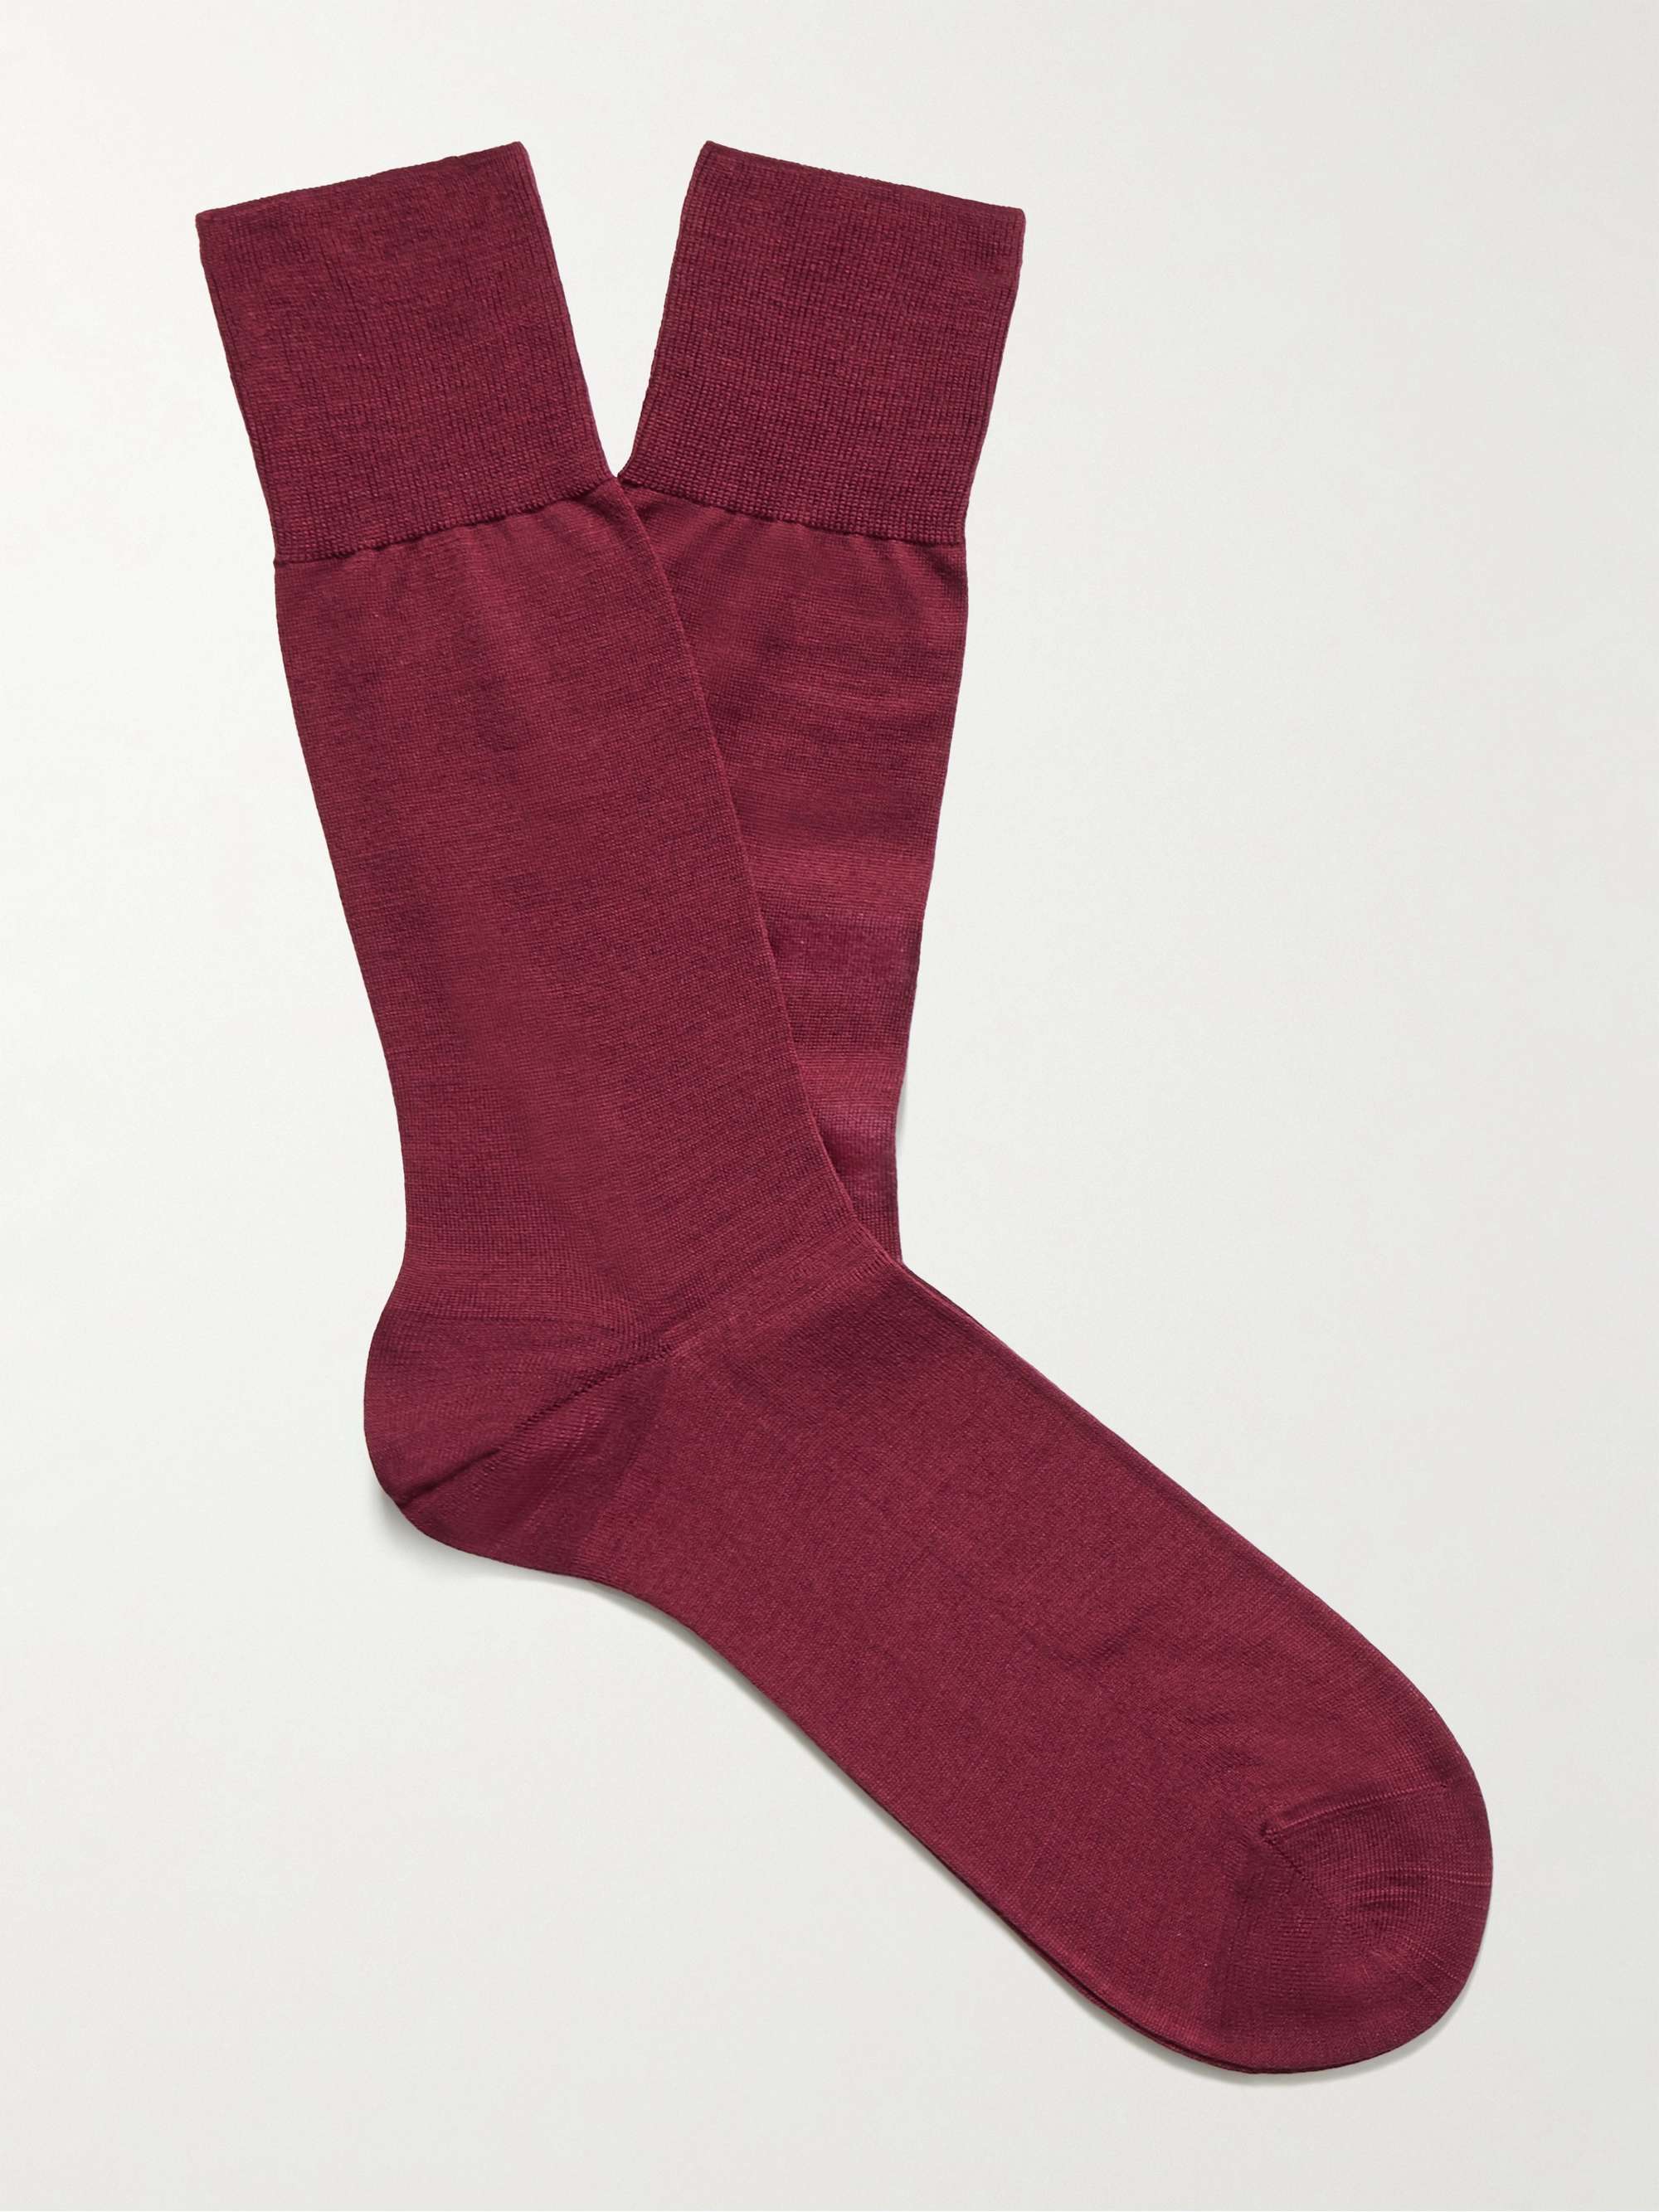 FALKE No 6 Merino Wool-Blend Socks